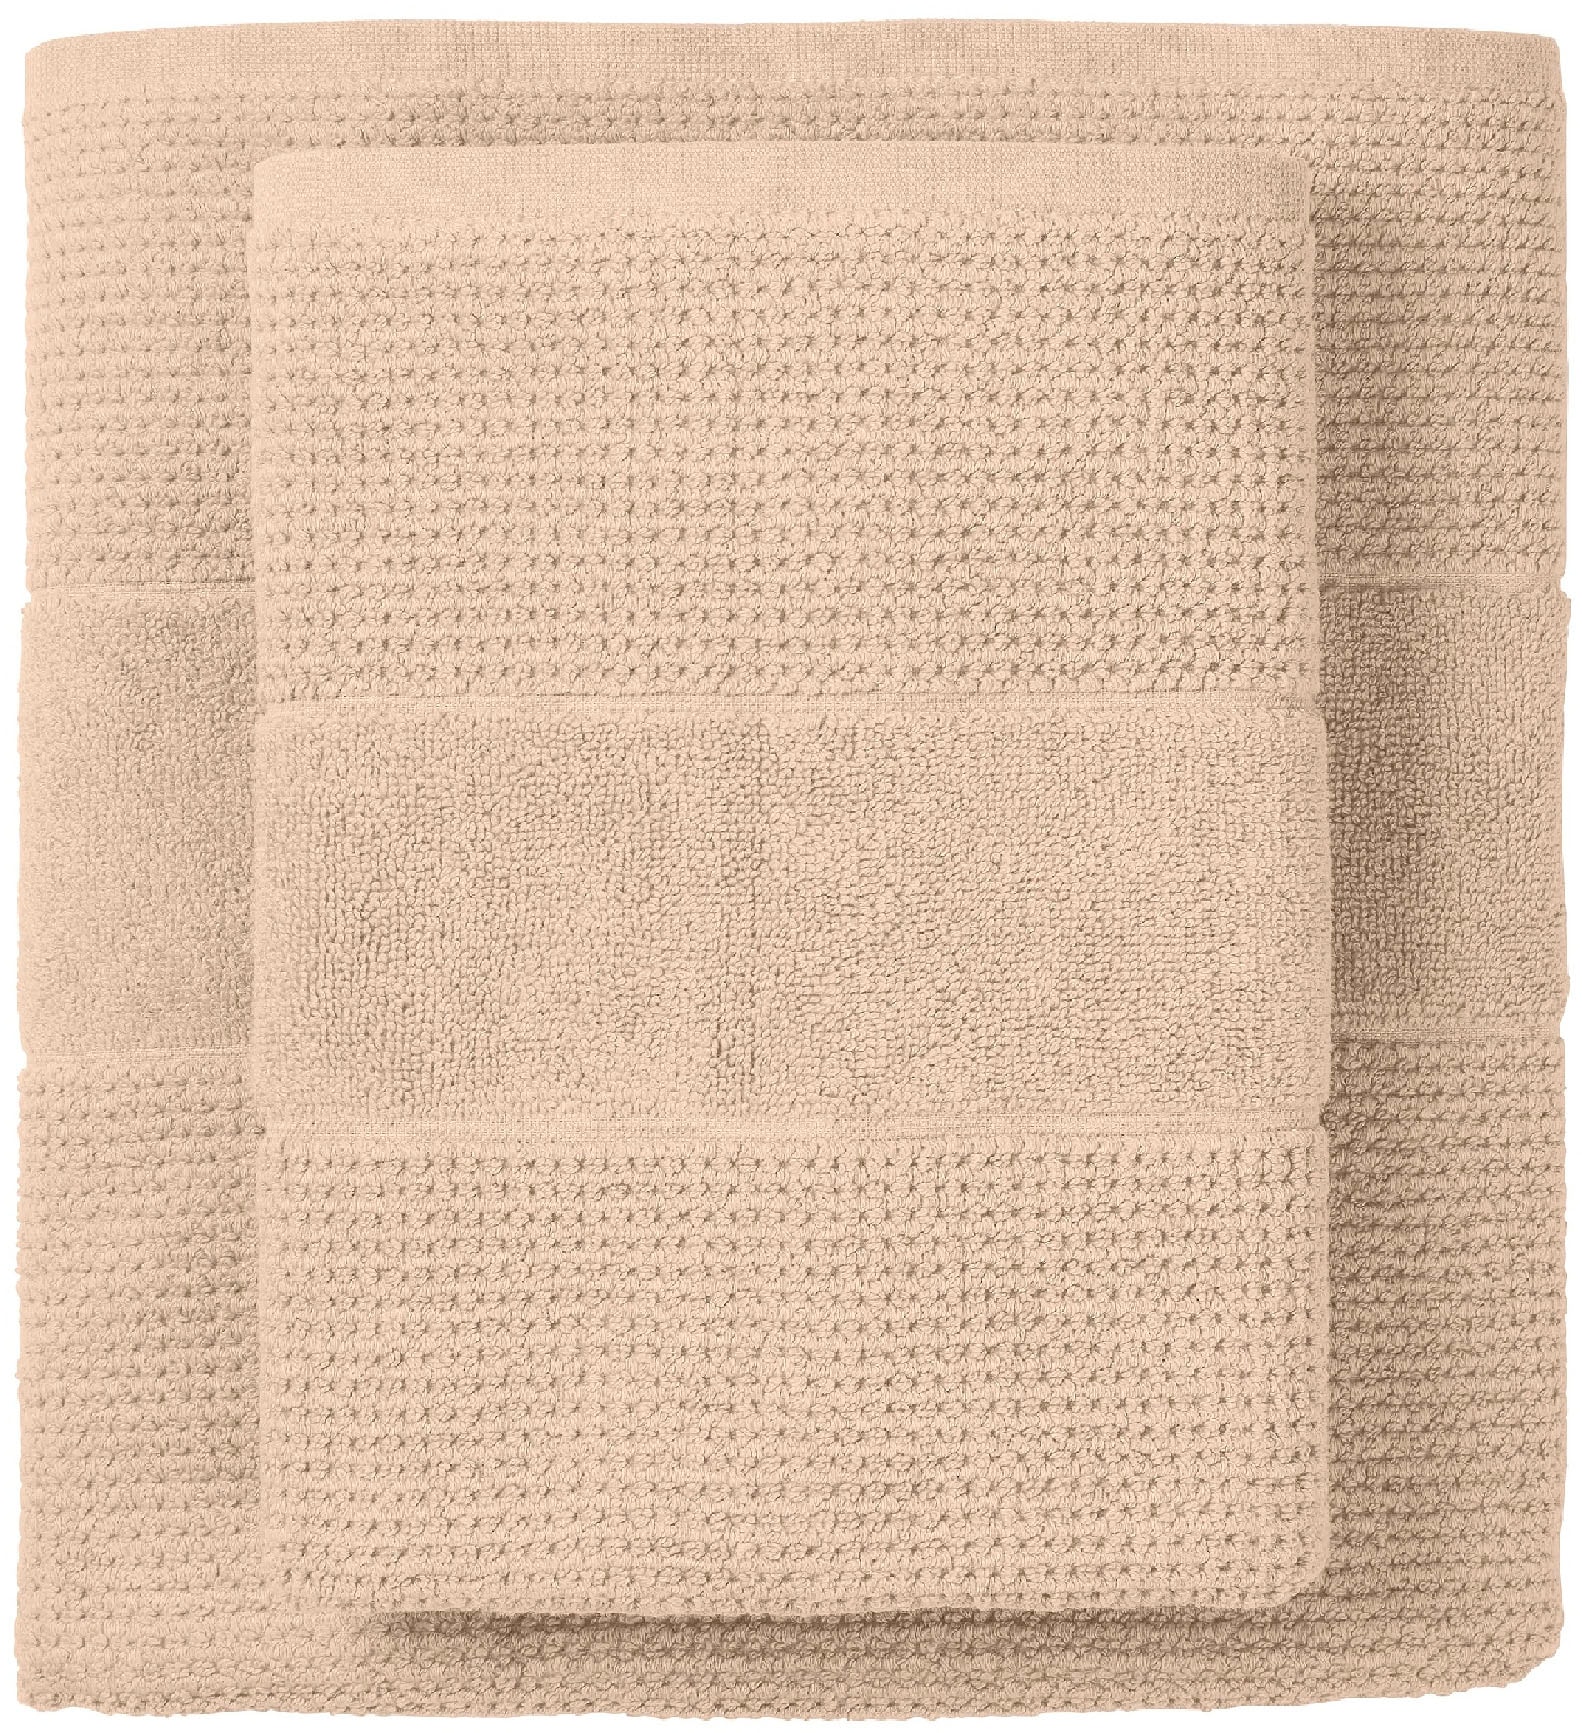 Schiesser Duschtücher »Turin aus 100% Baumwolle in dezenter Reiskornoptik«, (Set, 4 St.), MADE IN GREEN by OEKO-TEX®